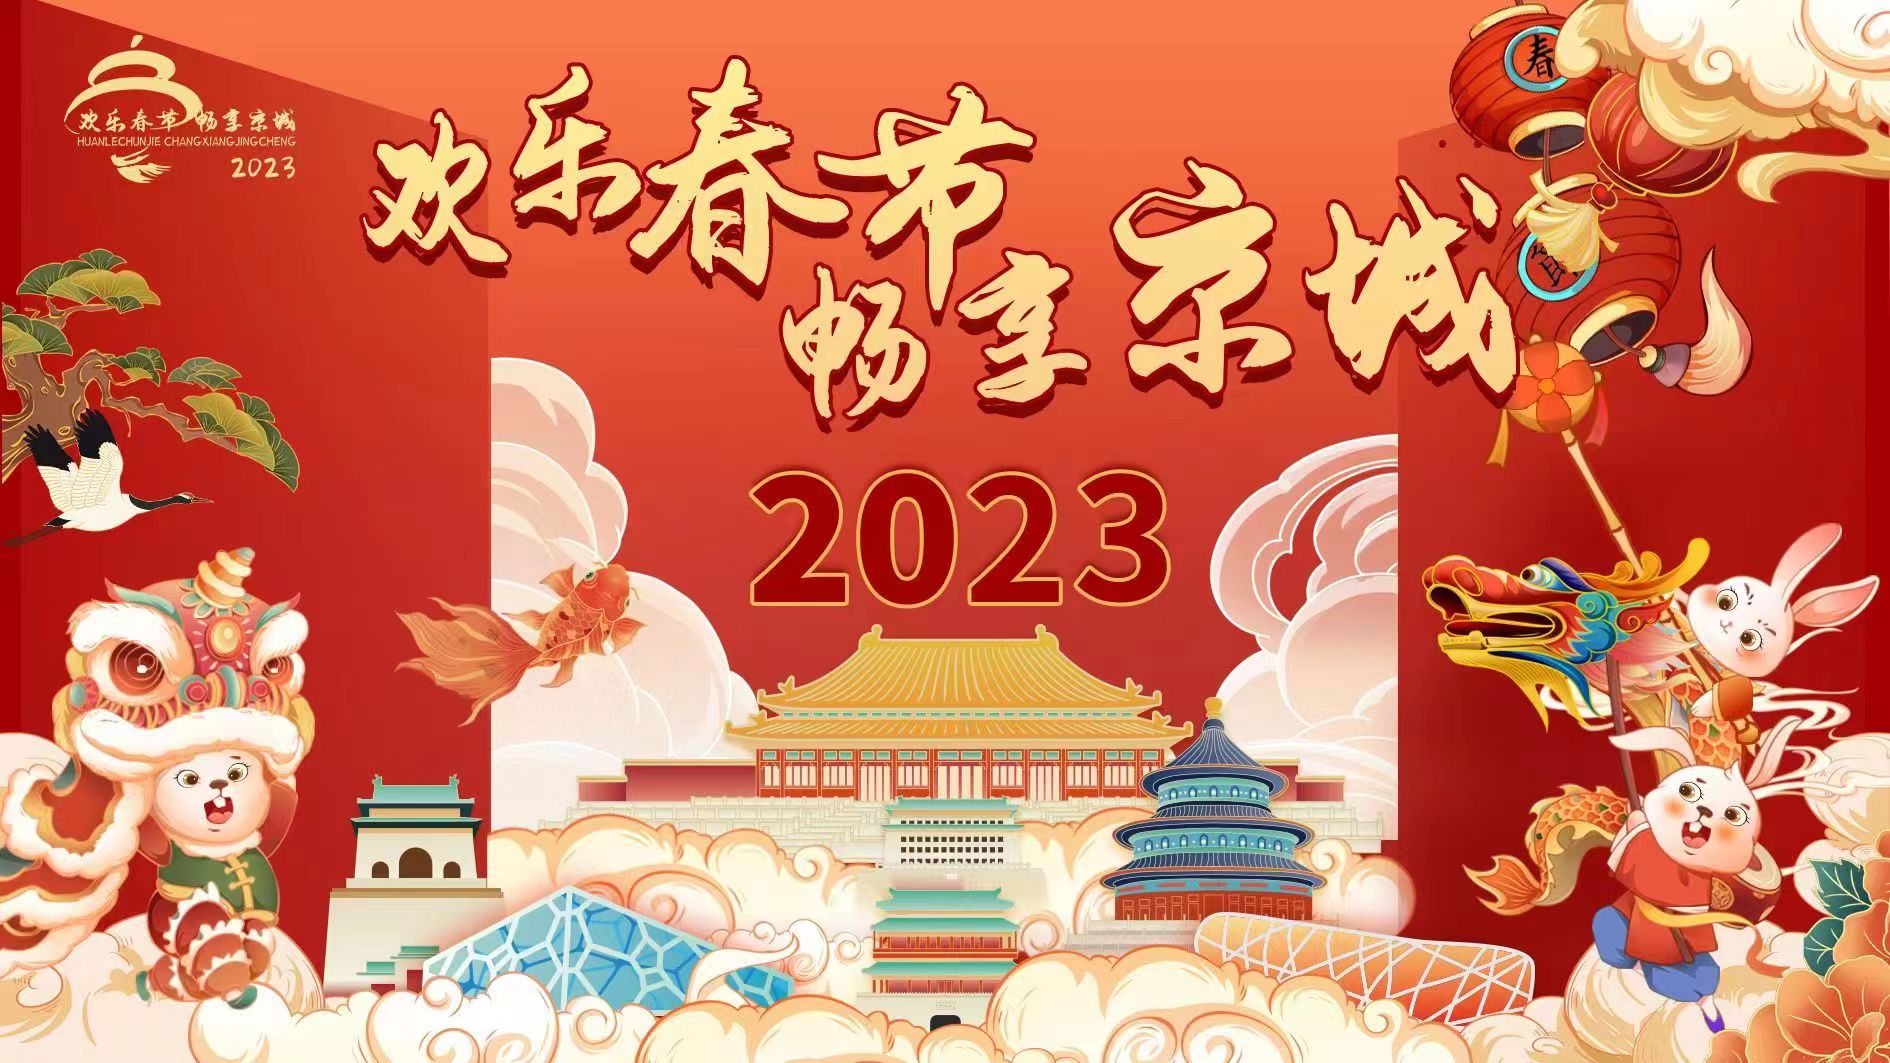 新春送祝福 | 北京市文化和旅游局給您拜年啦